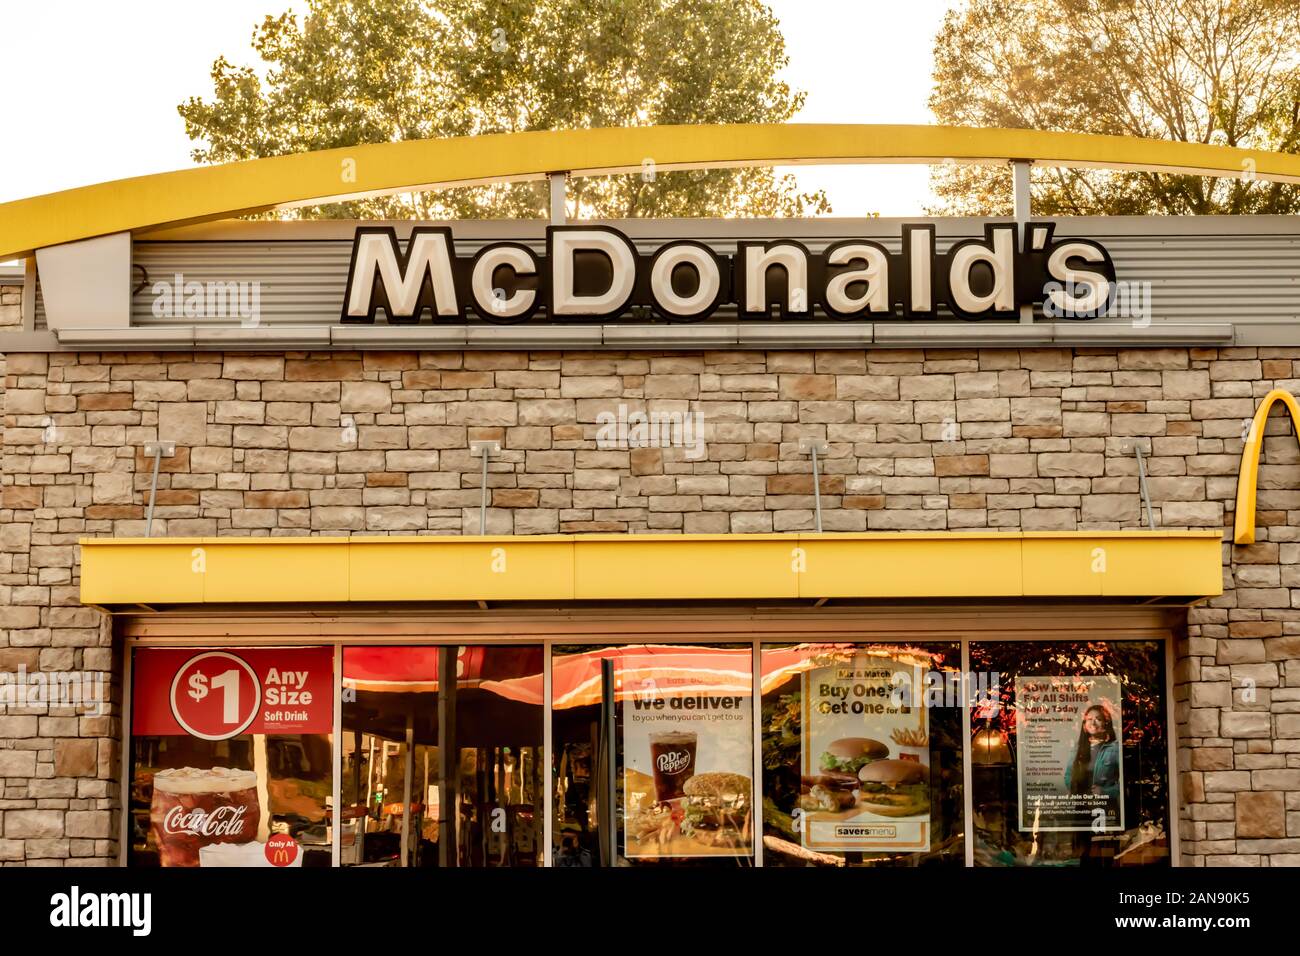 Charlotte, NC/USA - Oktober 12, 2019: Außen beige Fassade aus Stein von McDonald's, die Marke / Logo in weiß und schwarzen Buchstaben, gelbe Bogen, Windows wi Stockfoto